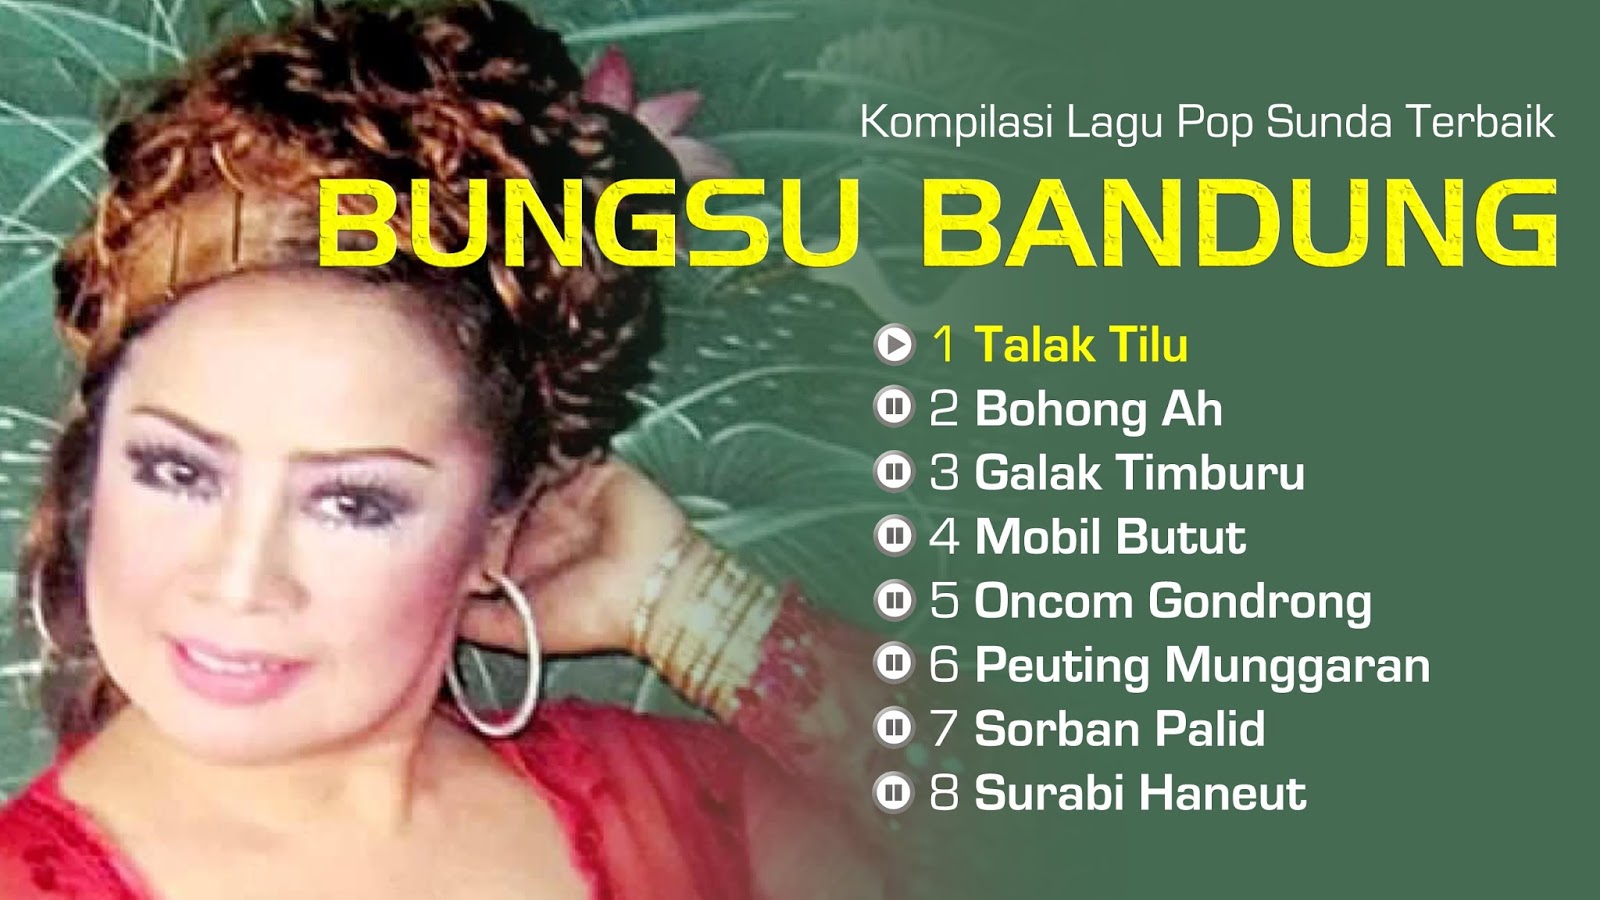  Lagu  Sunda  Bungsu Bandung  Mp3 Pilihan Dangdut Terbaru